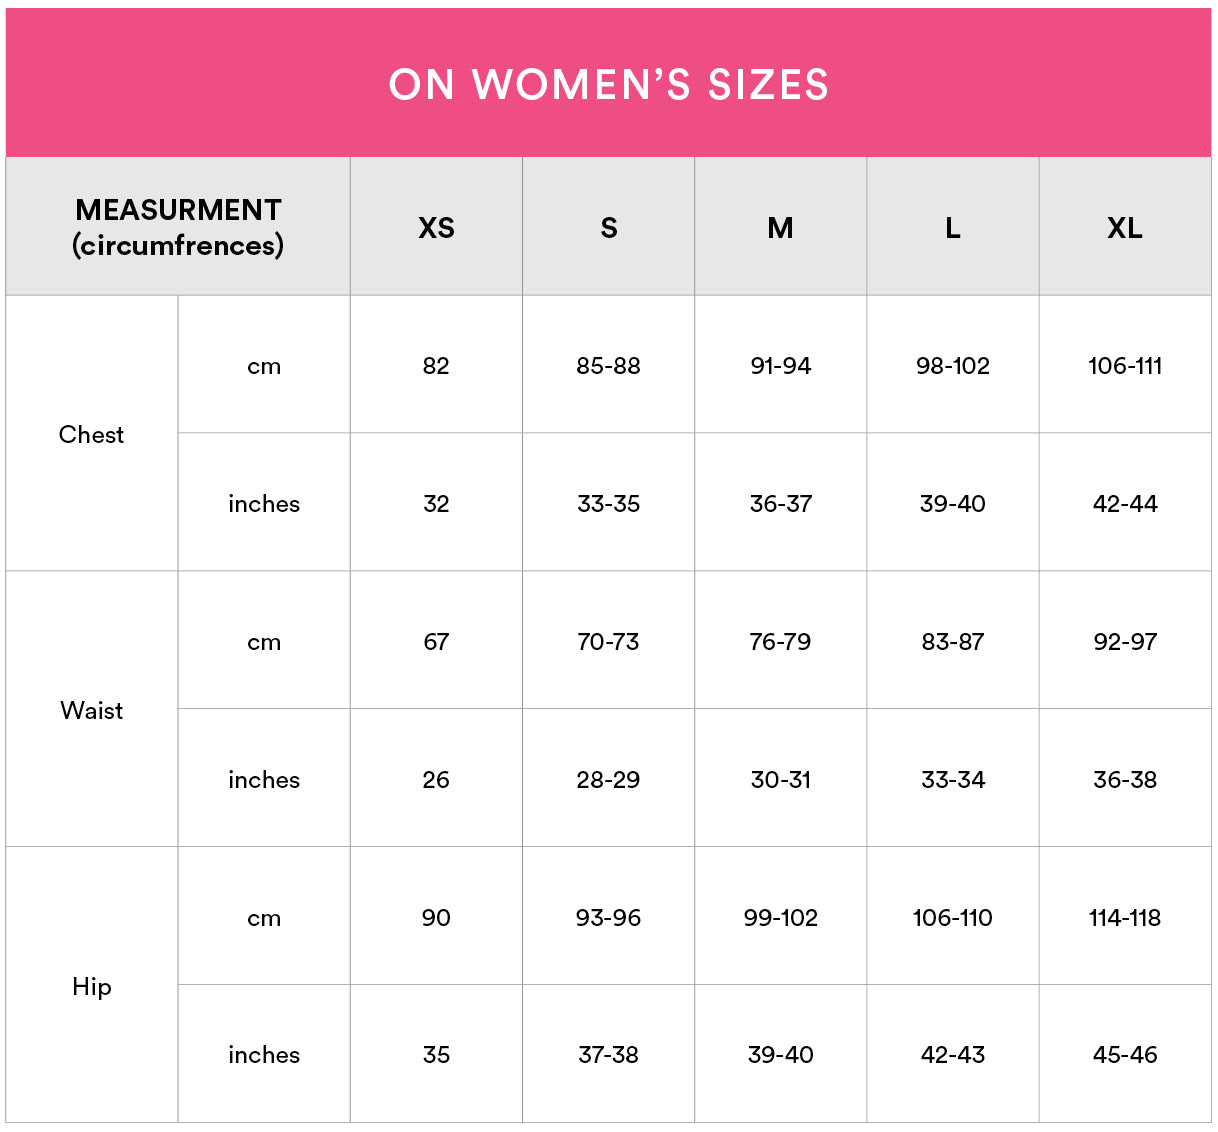 https://cdn.shopify.com/s/files/1/0435/2039/3377/files/ON-women_s-apparel-sizes.jpg?v=1600413938